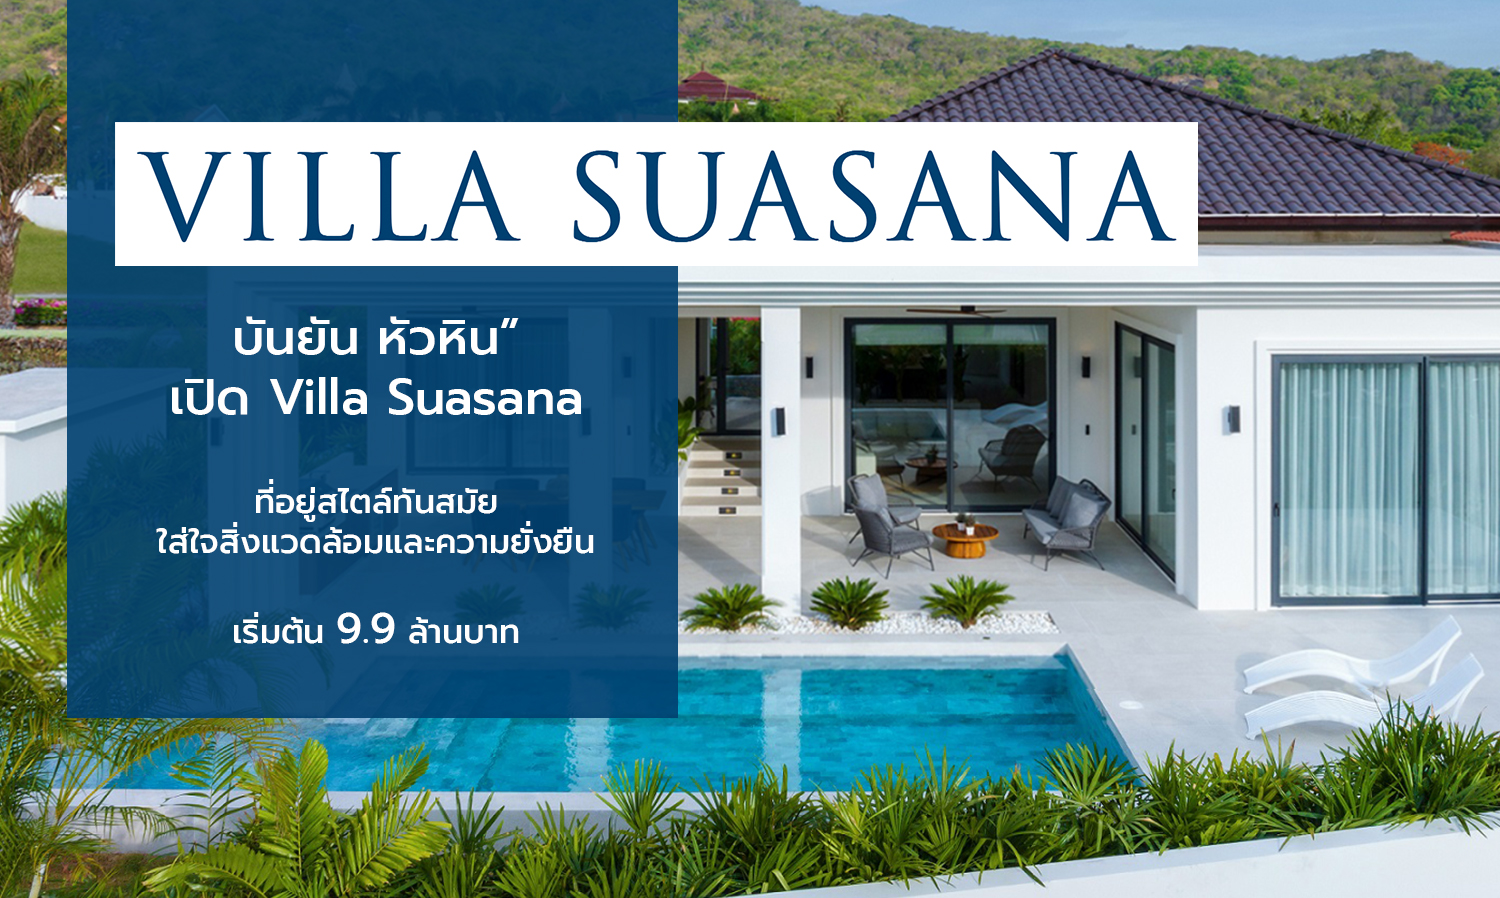 “บันยัน หัวหิน” เปิด Villa Suasana ที่อยู่สไตล์ทันสมัย ใส่ใจสิ่งแวดล้อมและความยั่งยืน เริ่มต้น 9.9 ล้านบาท